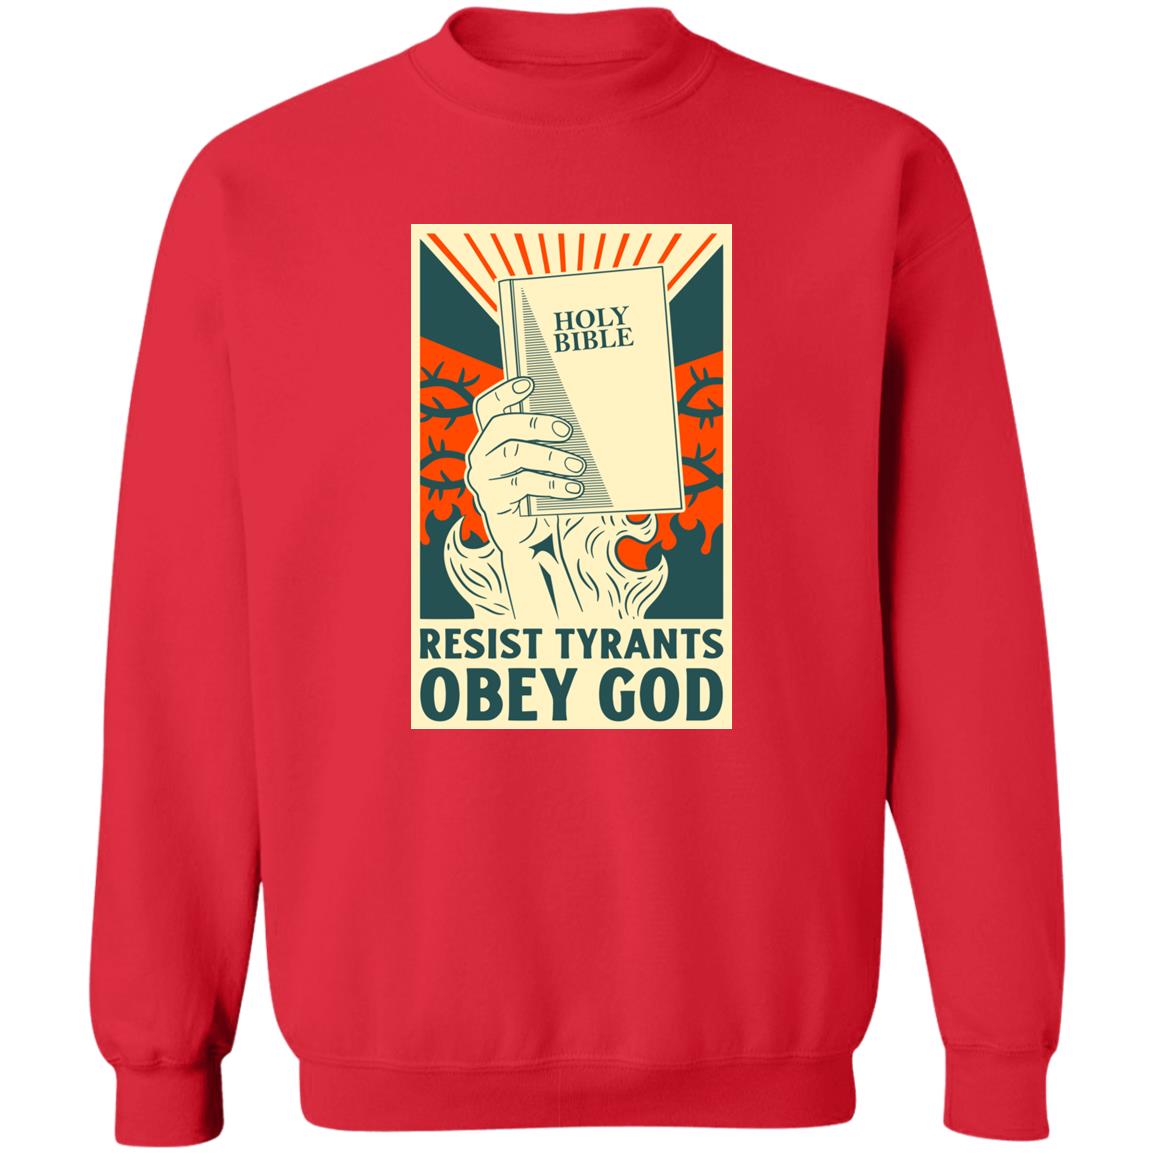 Resist Tyrants, Obey God (Unisex Sweatshirt)